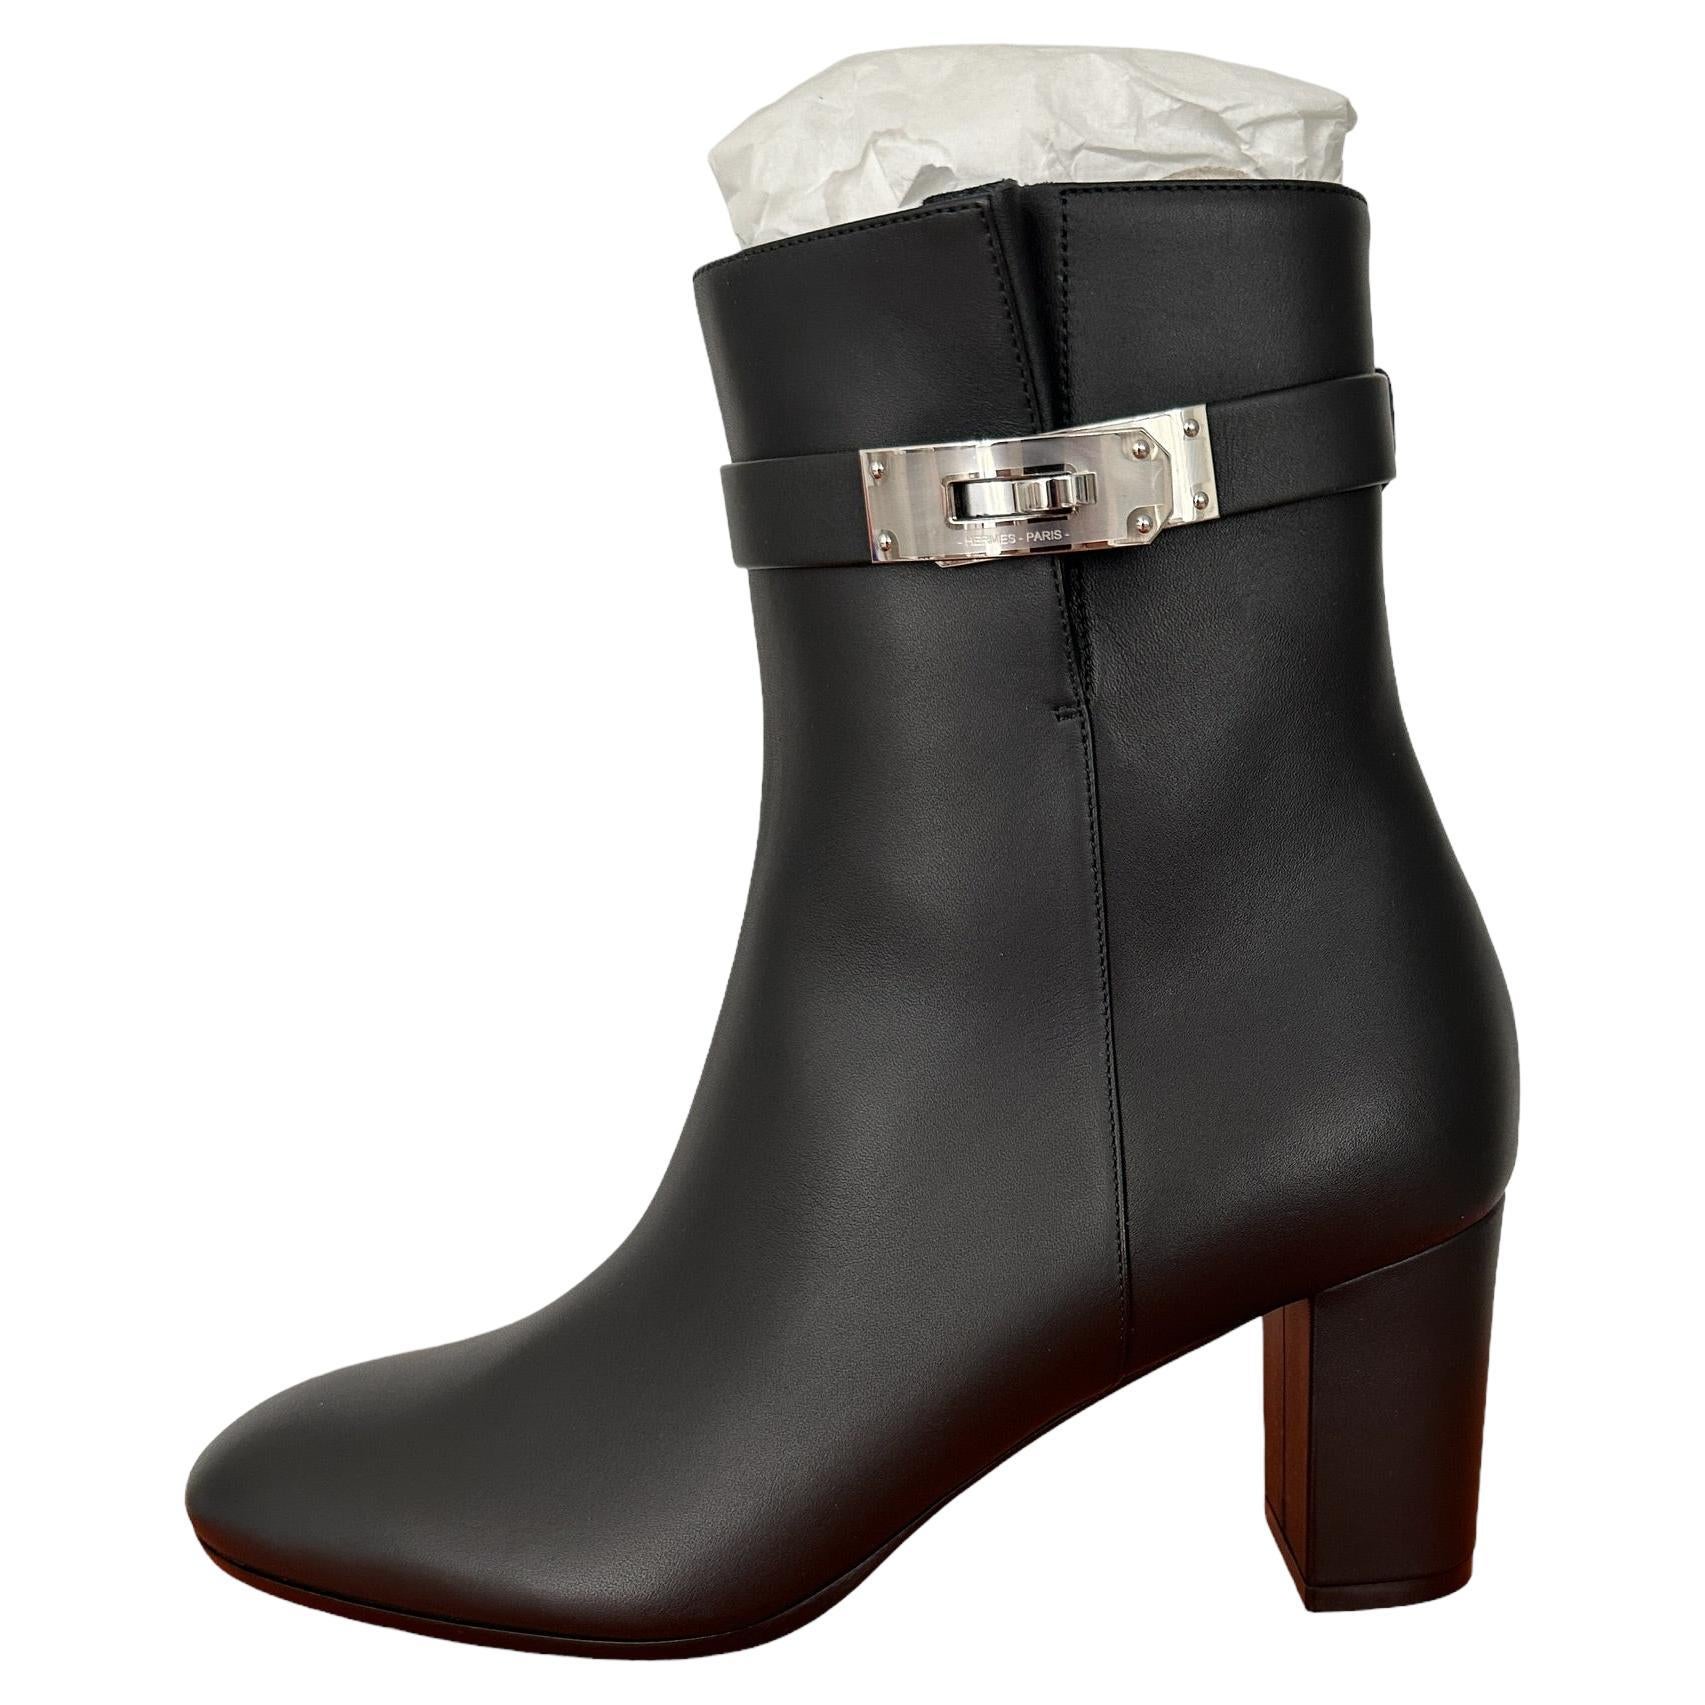 Hermes Boots Saint Germain Ankle Boot Black 40 Kelly Buckle $2000 prix boutique en vente